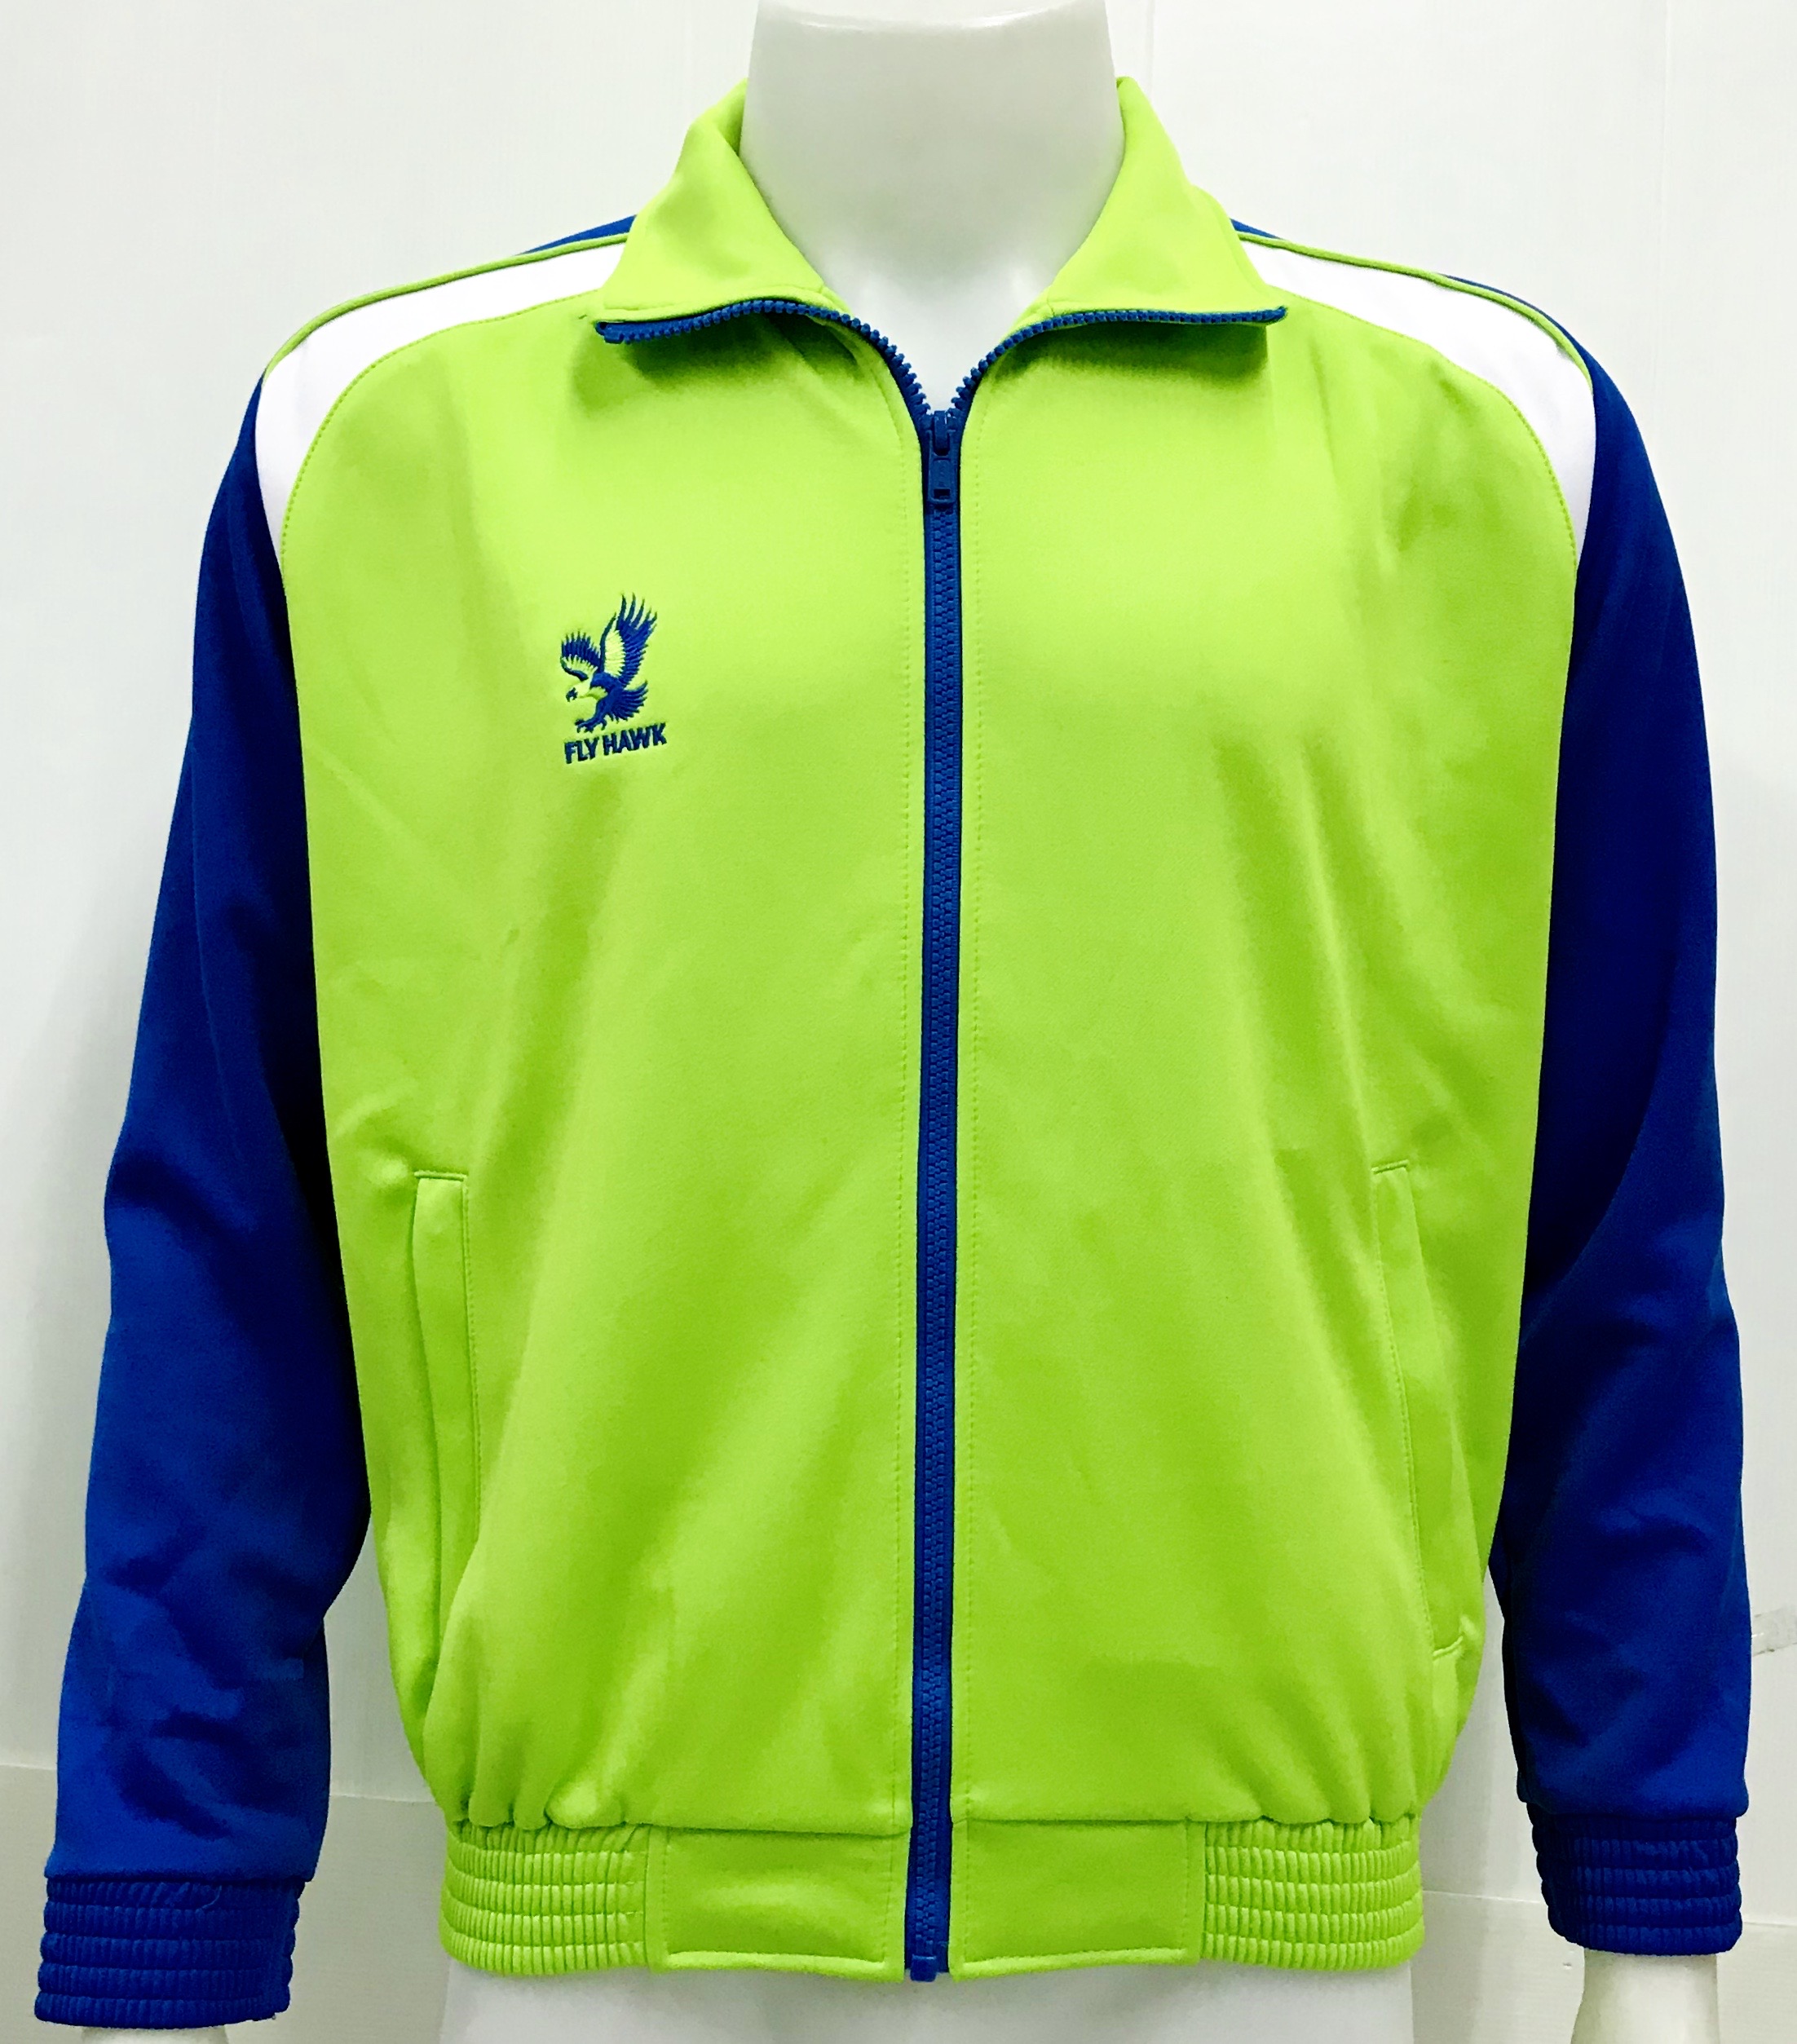 Flyhawk Sport เสื้อวอร์มฟลายฮอร์คสปอร์ต ของแท้ Warm suit (สีเขียว) Green ออกใบกำกับภาษีได้